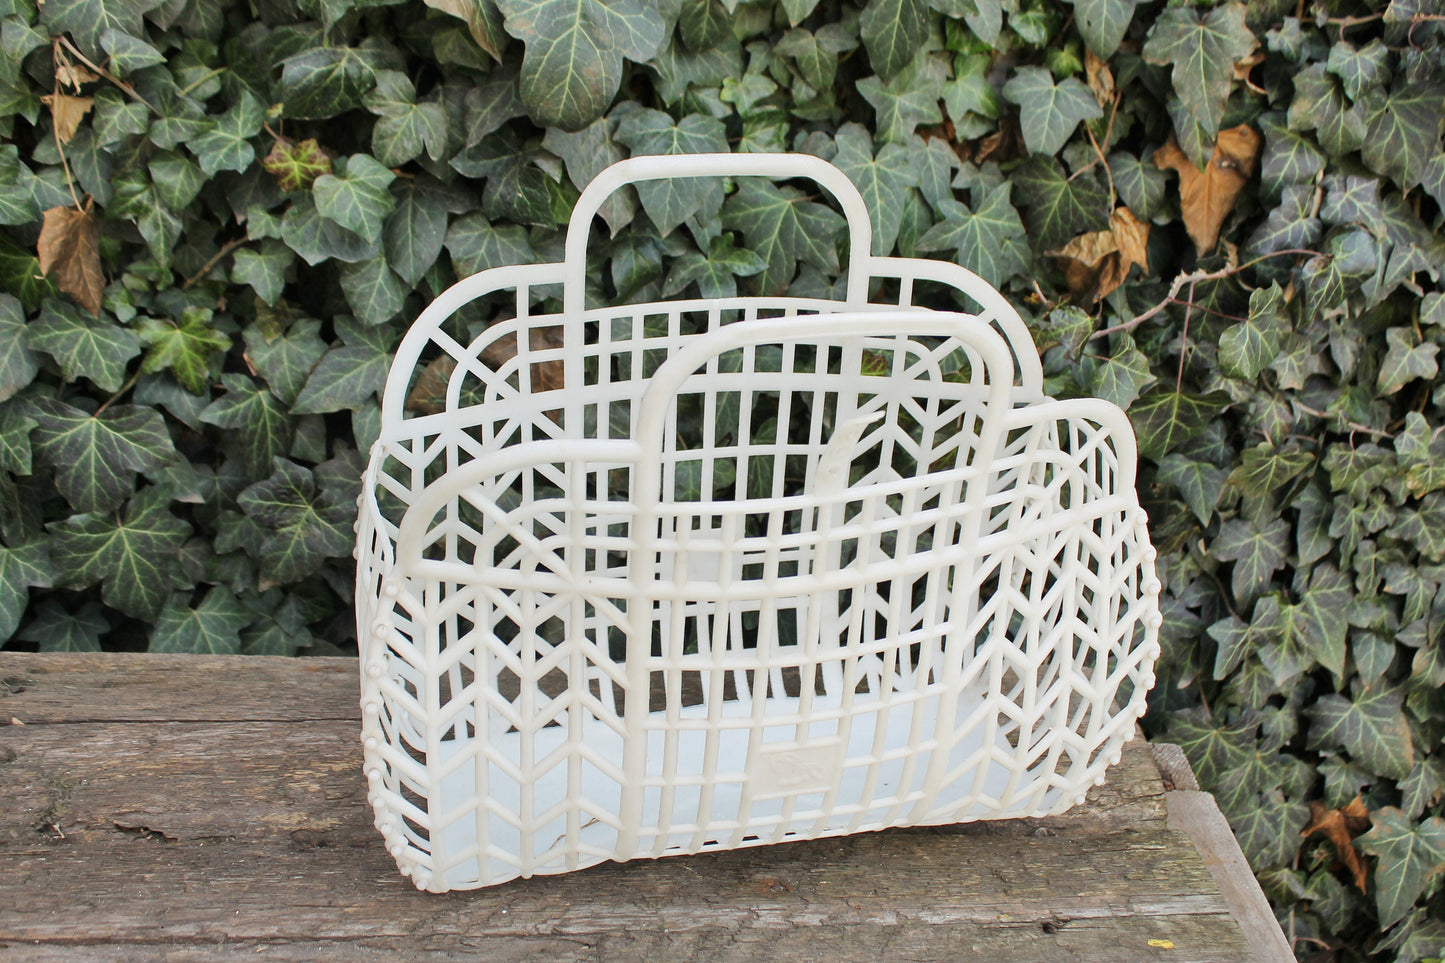 Vintage white basket -Go shopping - Made in USSR - Vintage home bag - Plastic basket - Picnic basket - reusable bag - 1970s